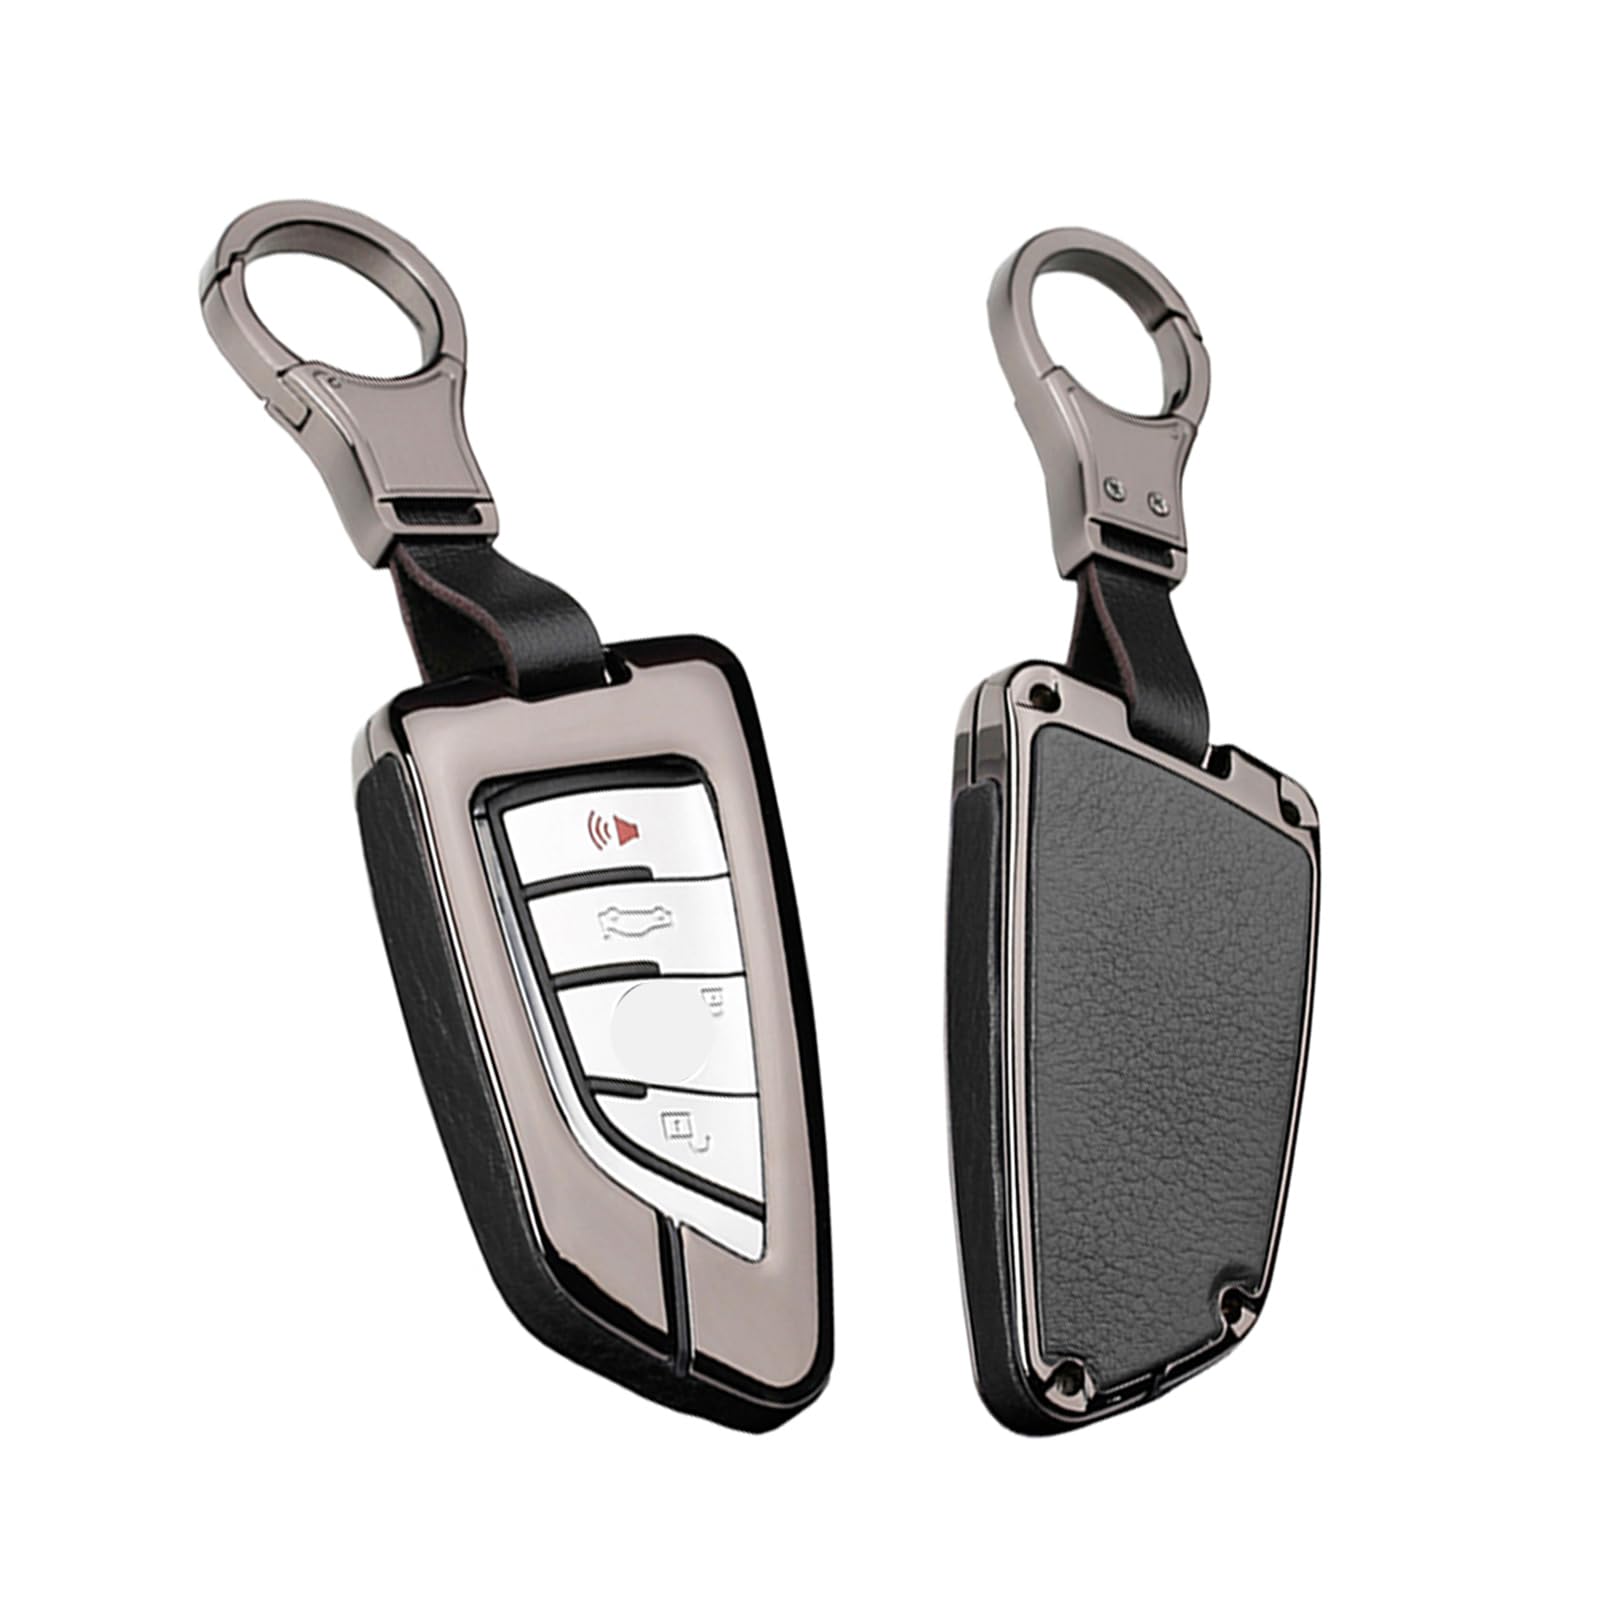 HIBEYO Autoschlüssel Hülle für BMW Cover Leder Zinklegierung Schutzhülle Schlüsselhülle für BMW Keyless Serie 1 3 5 7 X1 X3 X4 X5 X6 F30 E30 Smartkey Schlüsselbox Abdeckung Fall-Schwarz von HIBEYO